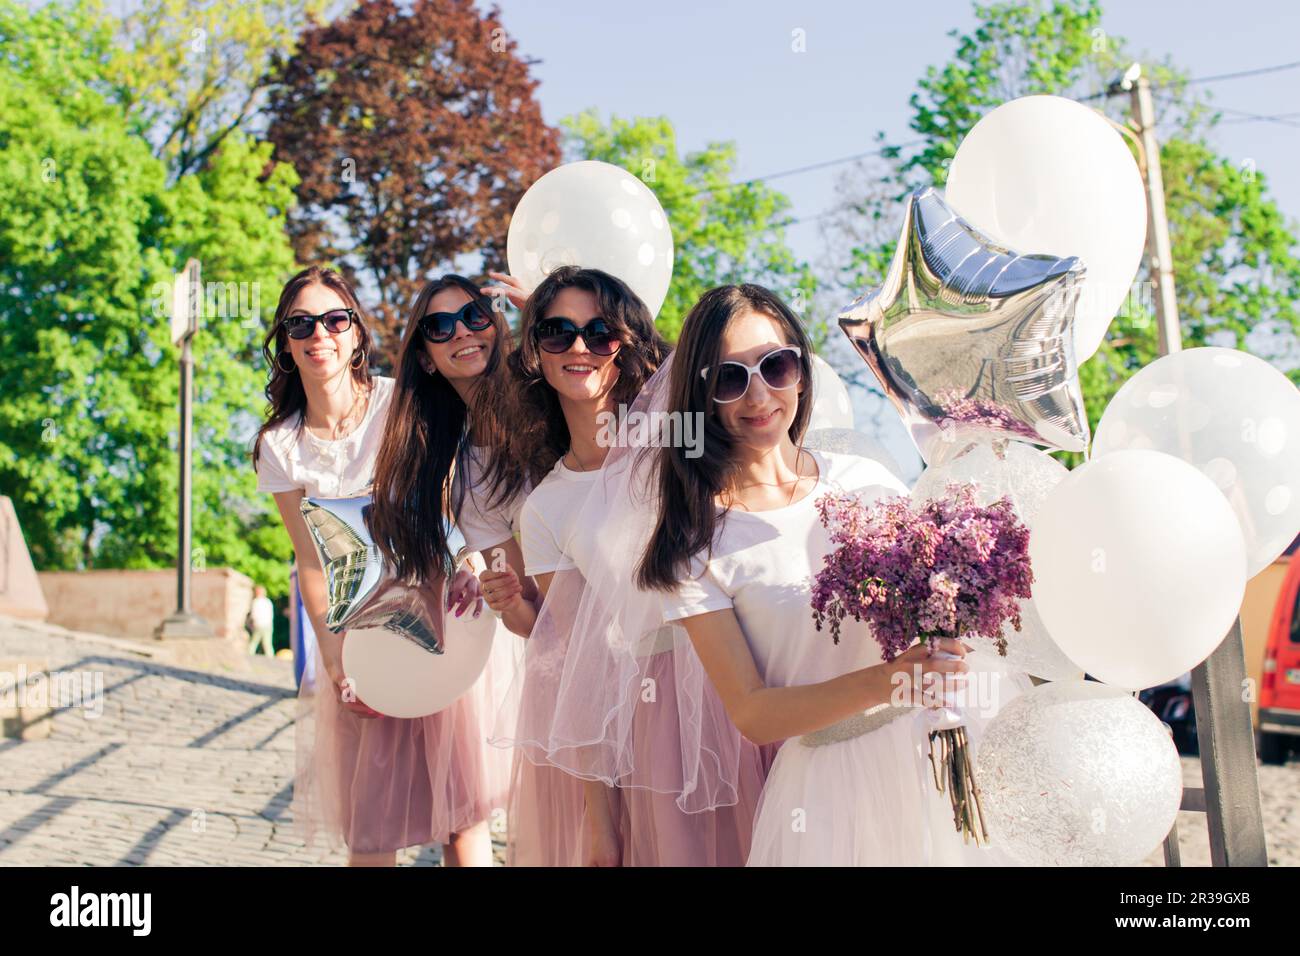 Ragazze che indossano abiti rosa che si divertono con la festa delle galline. Foto Stock